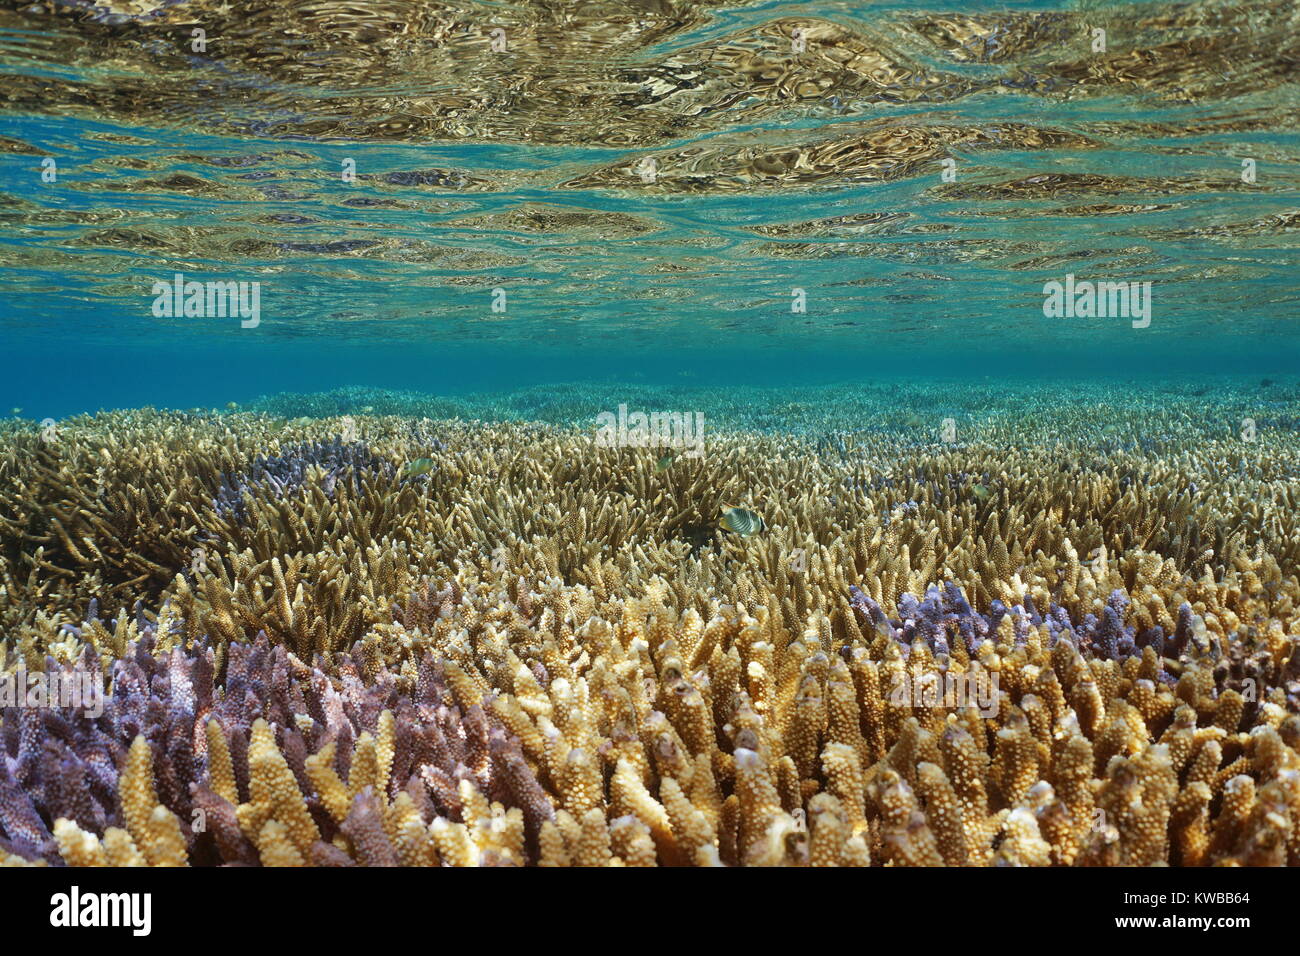 Oceano Pacifico, sano Coral reef sott'acqua vicino alla superficie dell'acqua, Acropora staghorn coralli nella laguna di Grande Terre Island in Nuova Caledonia Foto Stock